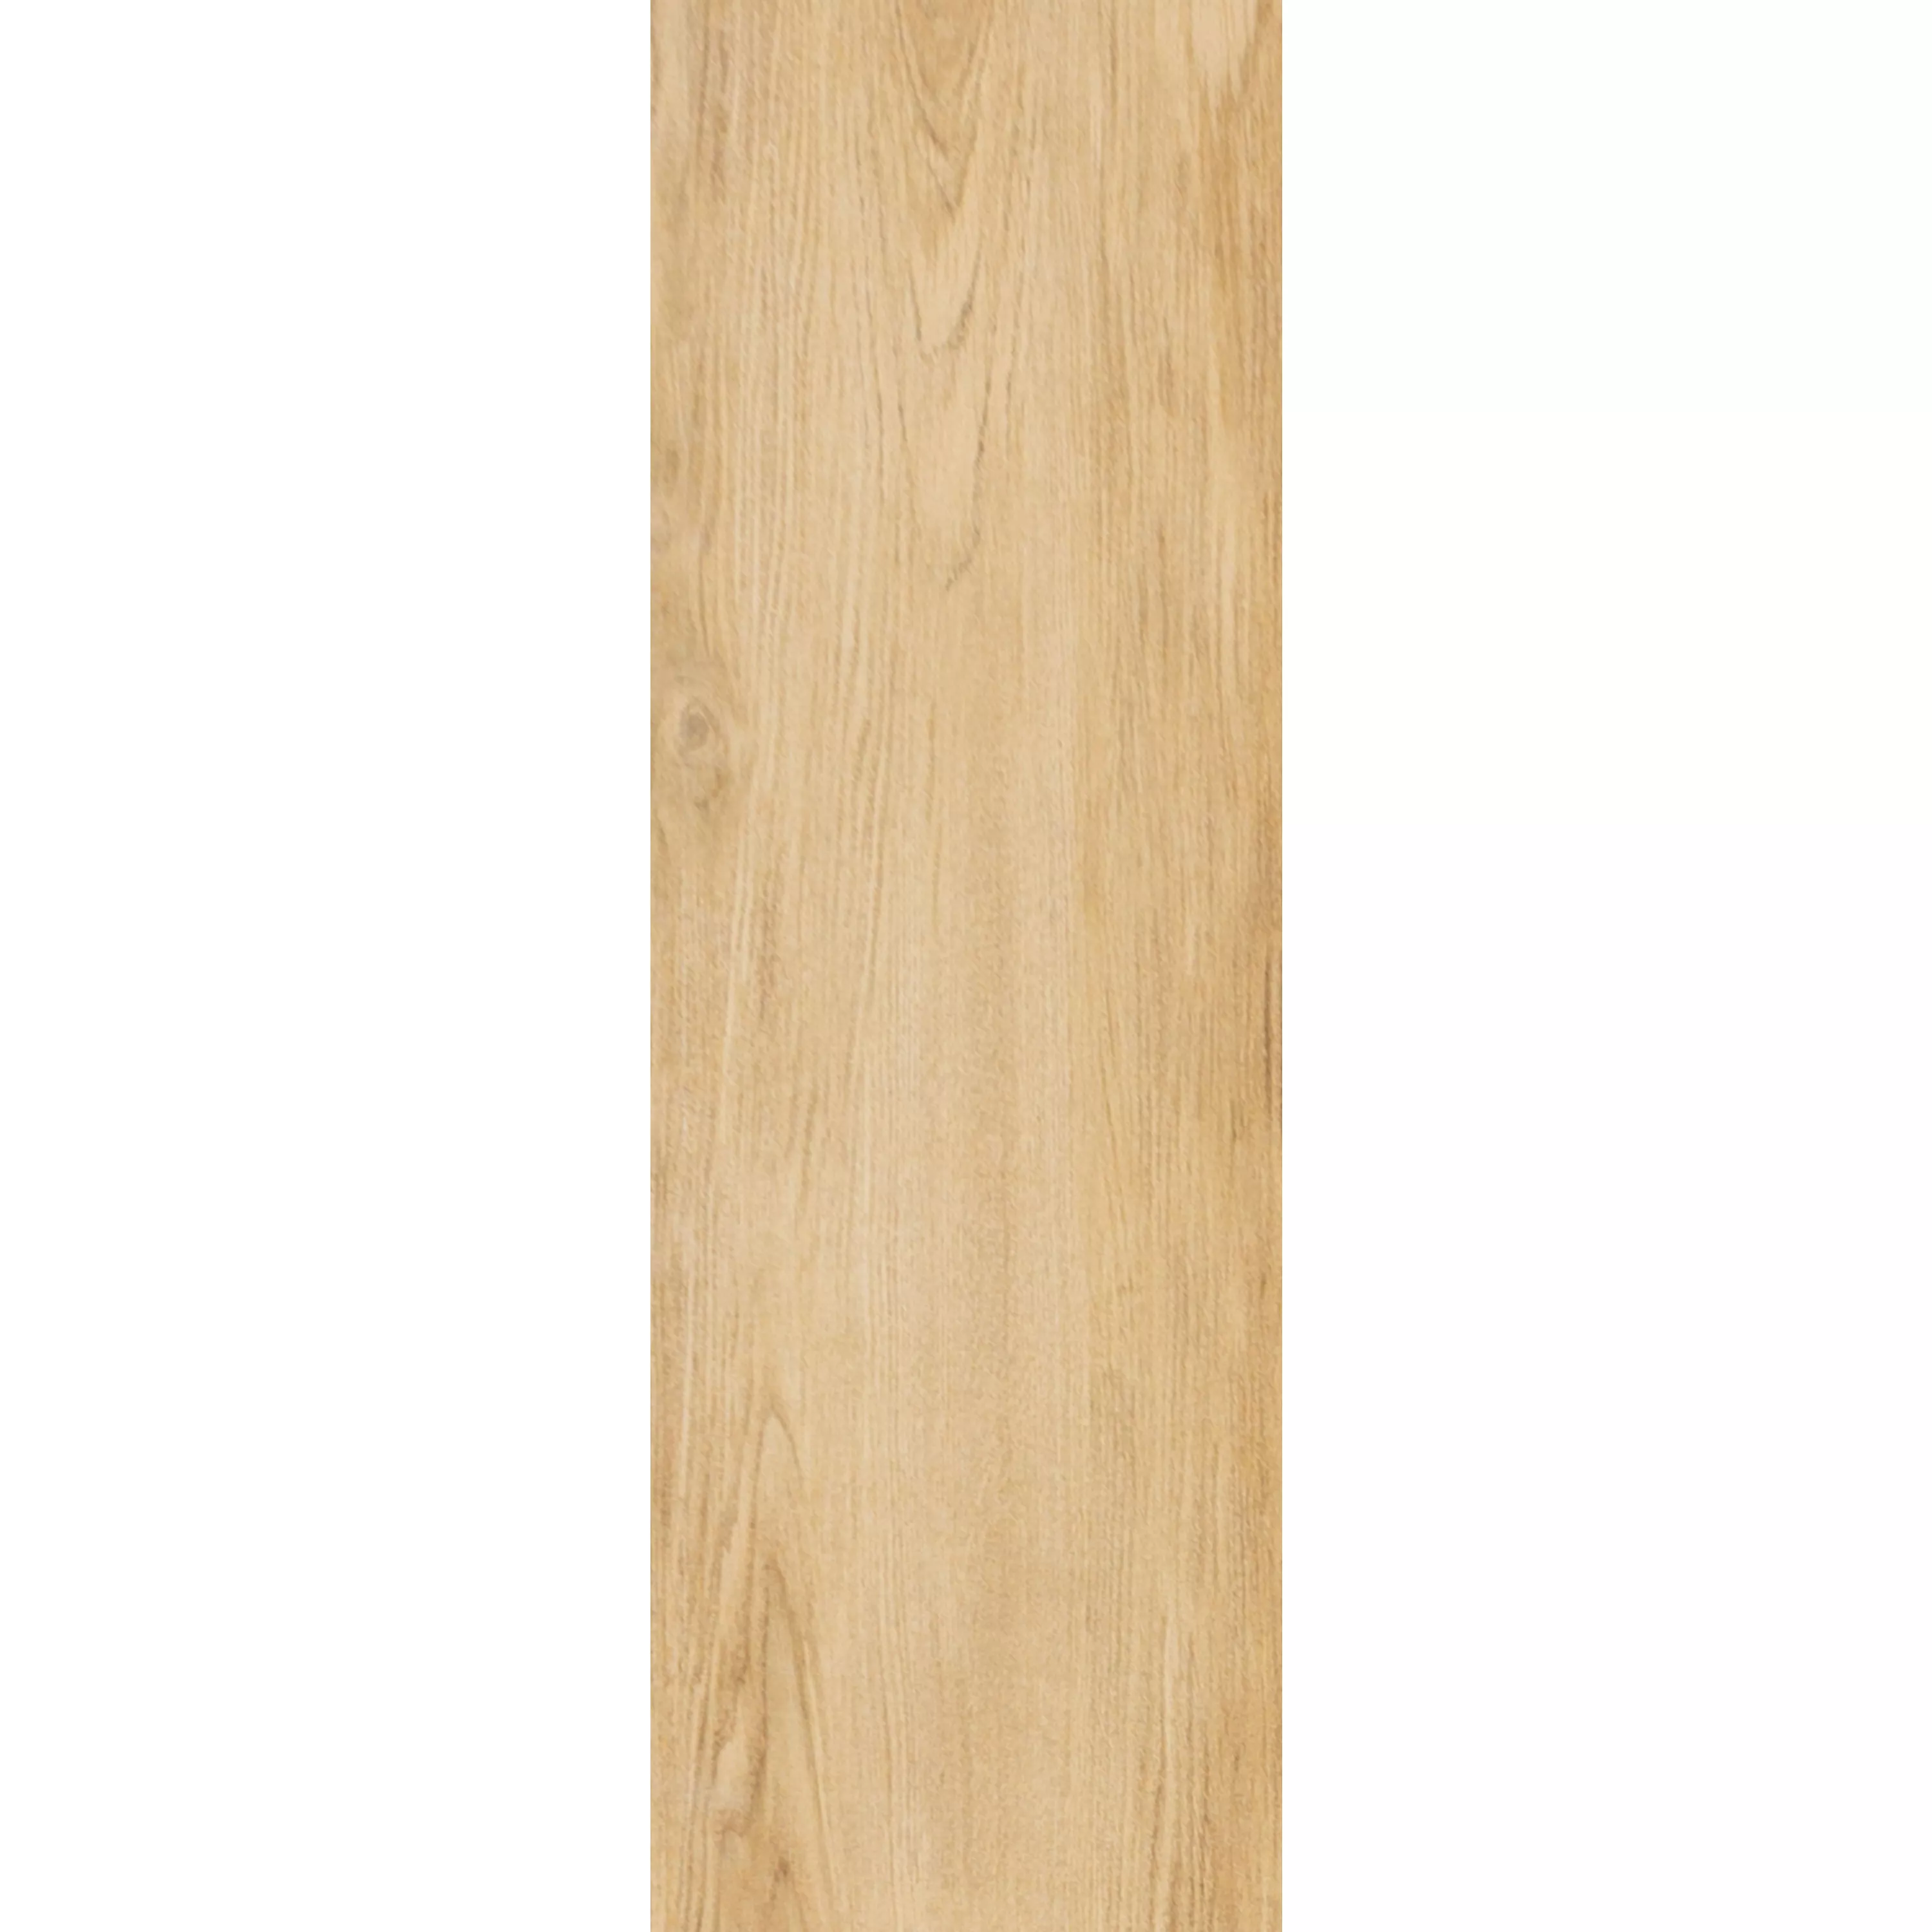 Floor Tiles Wood Optic Darlington Beige 20x120cm